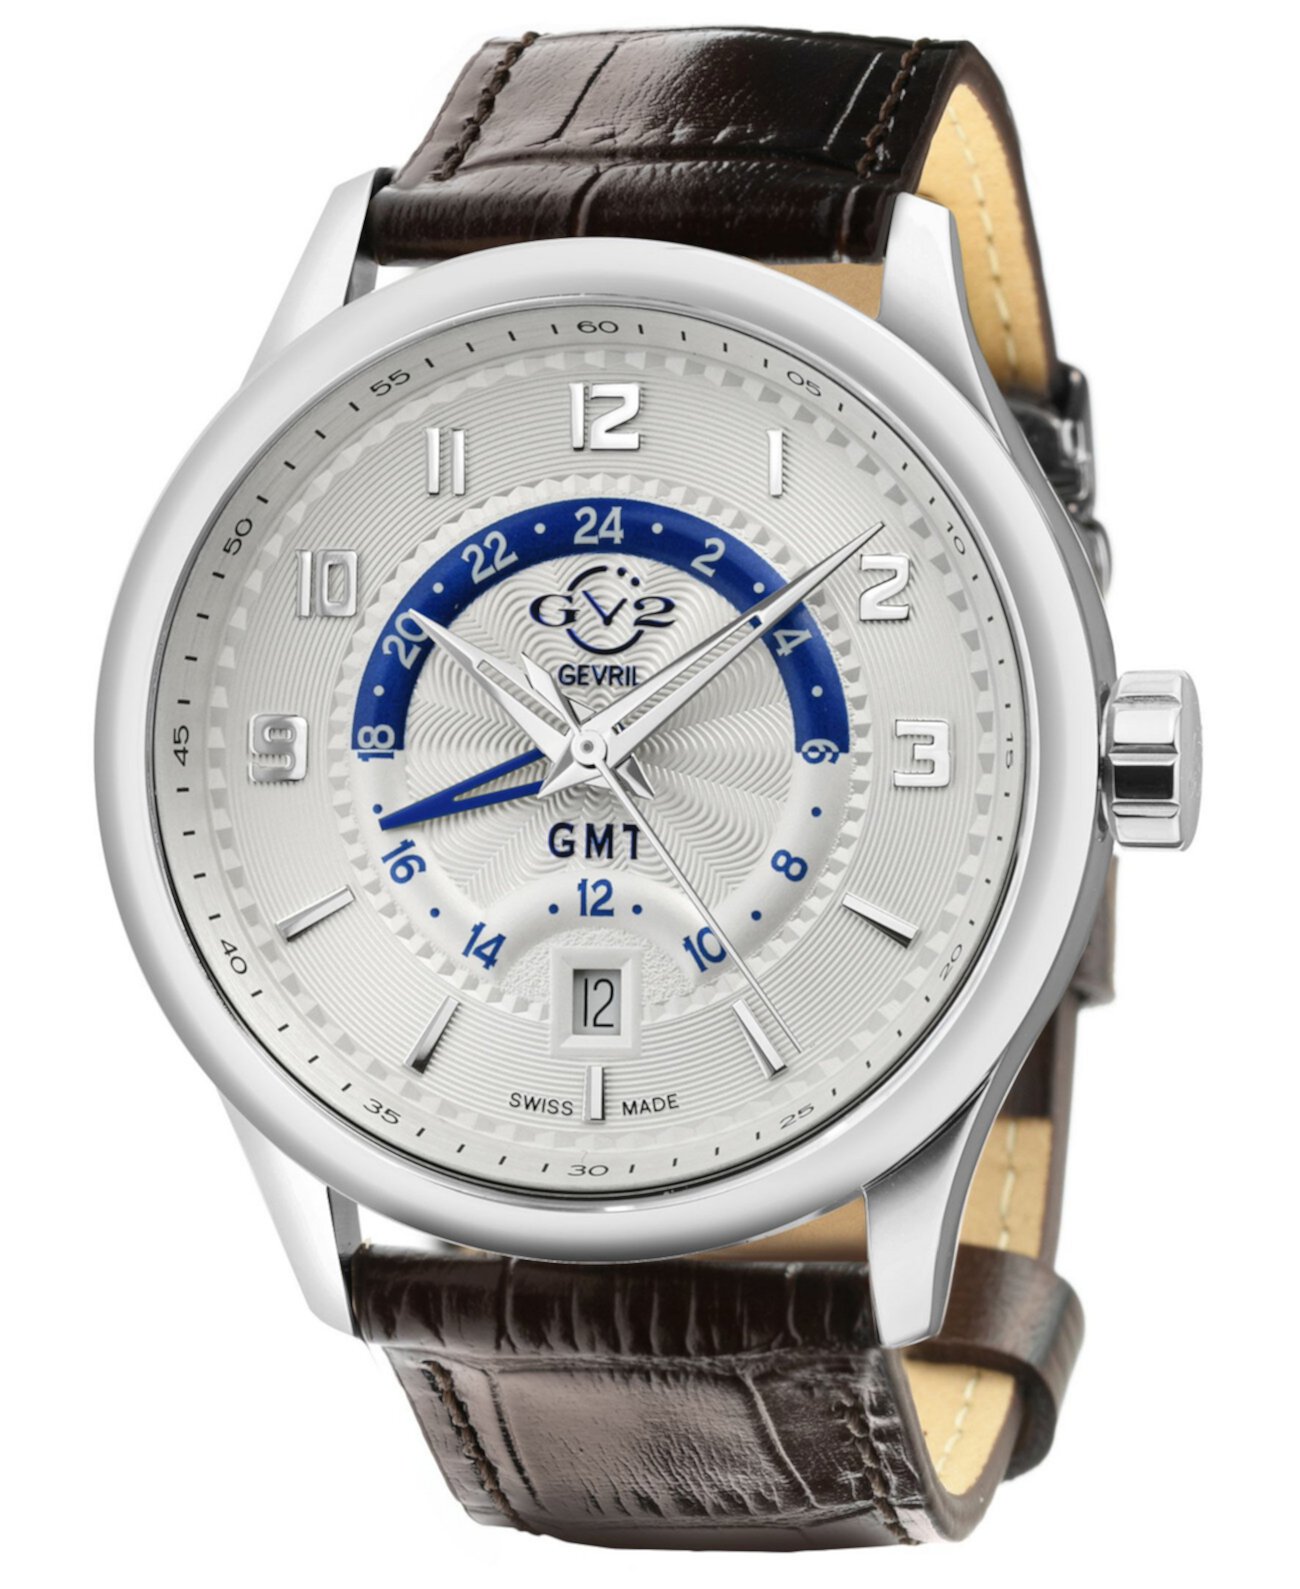 Мужские часы Giromondo Giromondo с коричневым кожаным швейцарским кварцевым ремешком, 42 мм GV2 Gevril